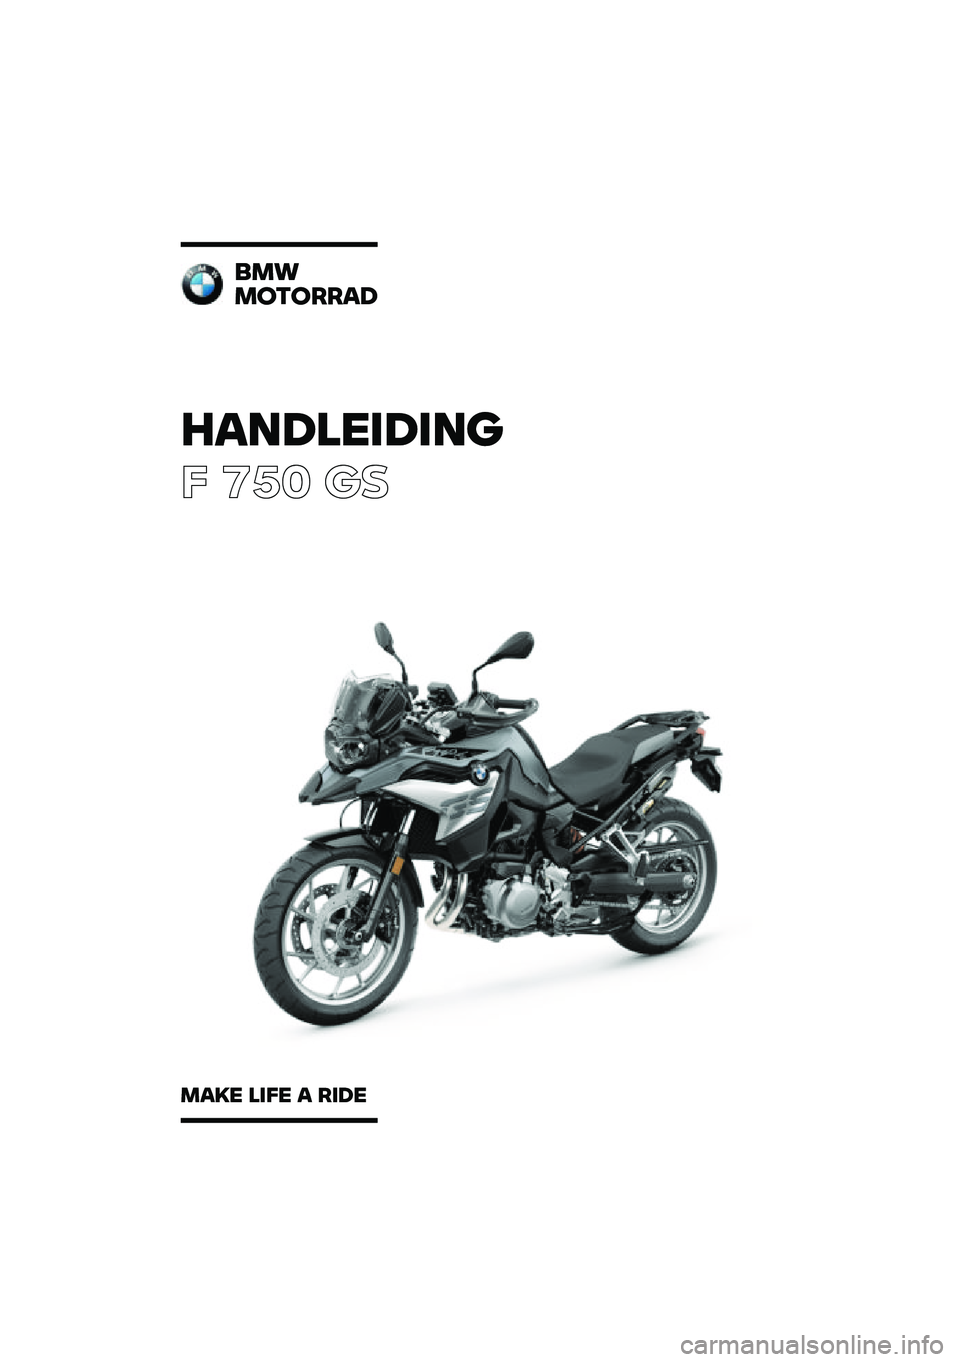 BMW MOTORRAD F 750 GS 2020  Handleiding (in Dutch) �������\b��\b��	
� ��� �\b�	
�
��\f
��
��
����
���� ��\b�� � ��\b�� 